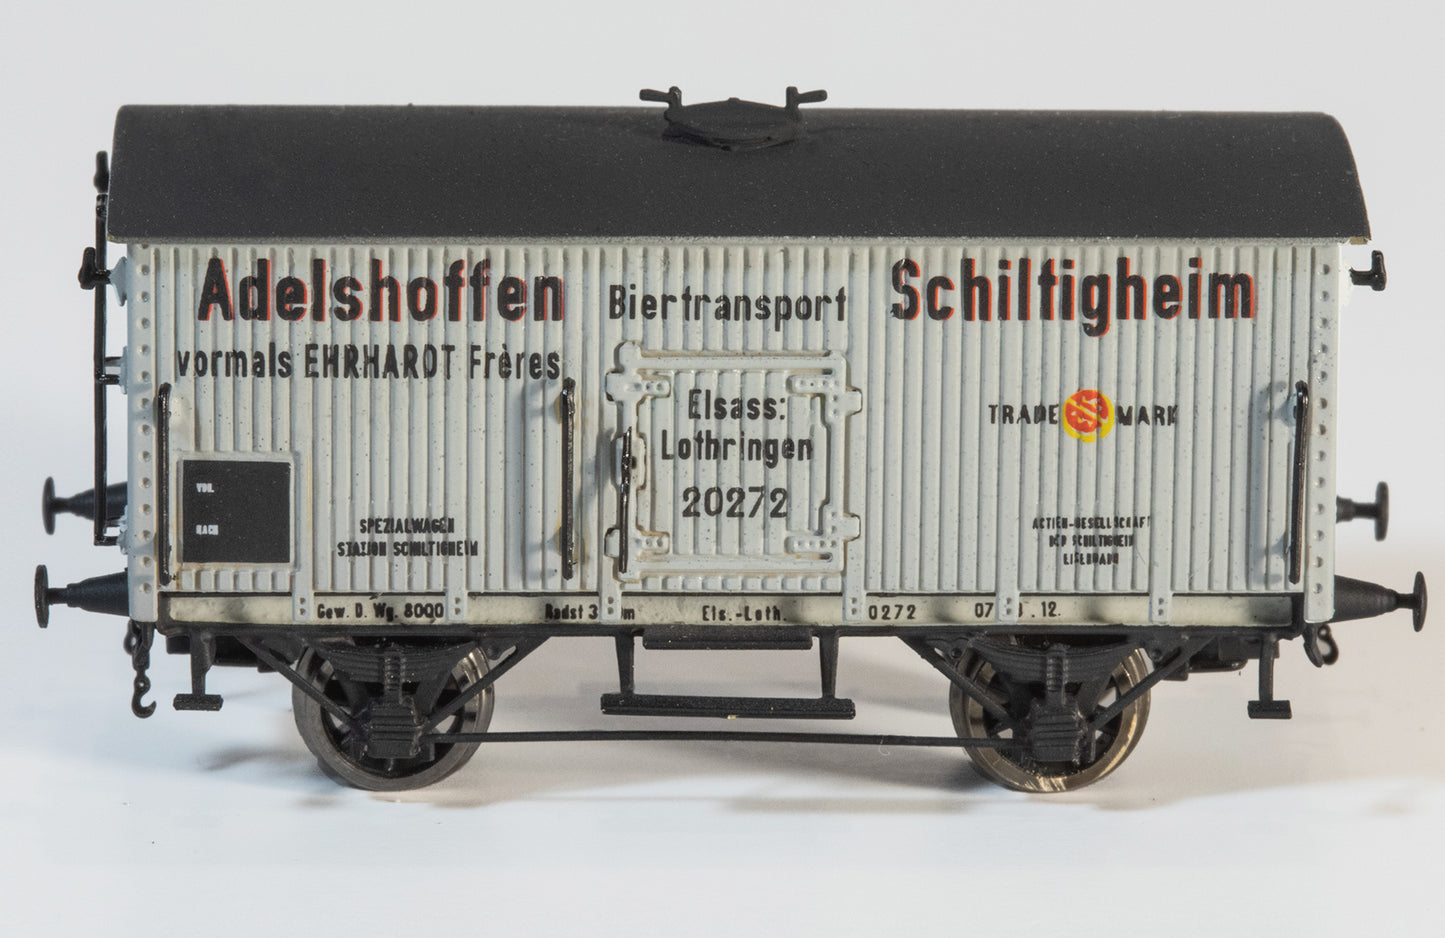 AP4013-002-03 Wagon à bière "Adelshoffen Schiltigheim" - Els.Loth. - J'ère